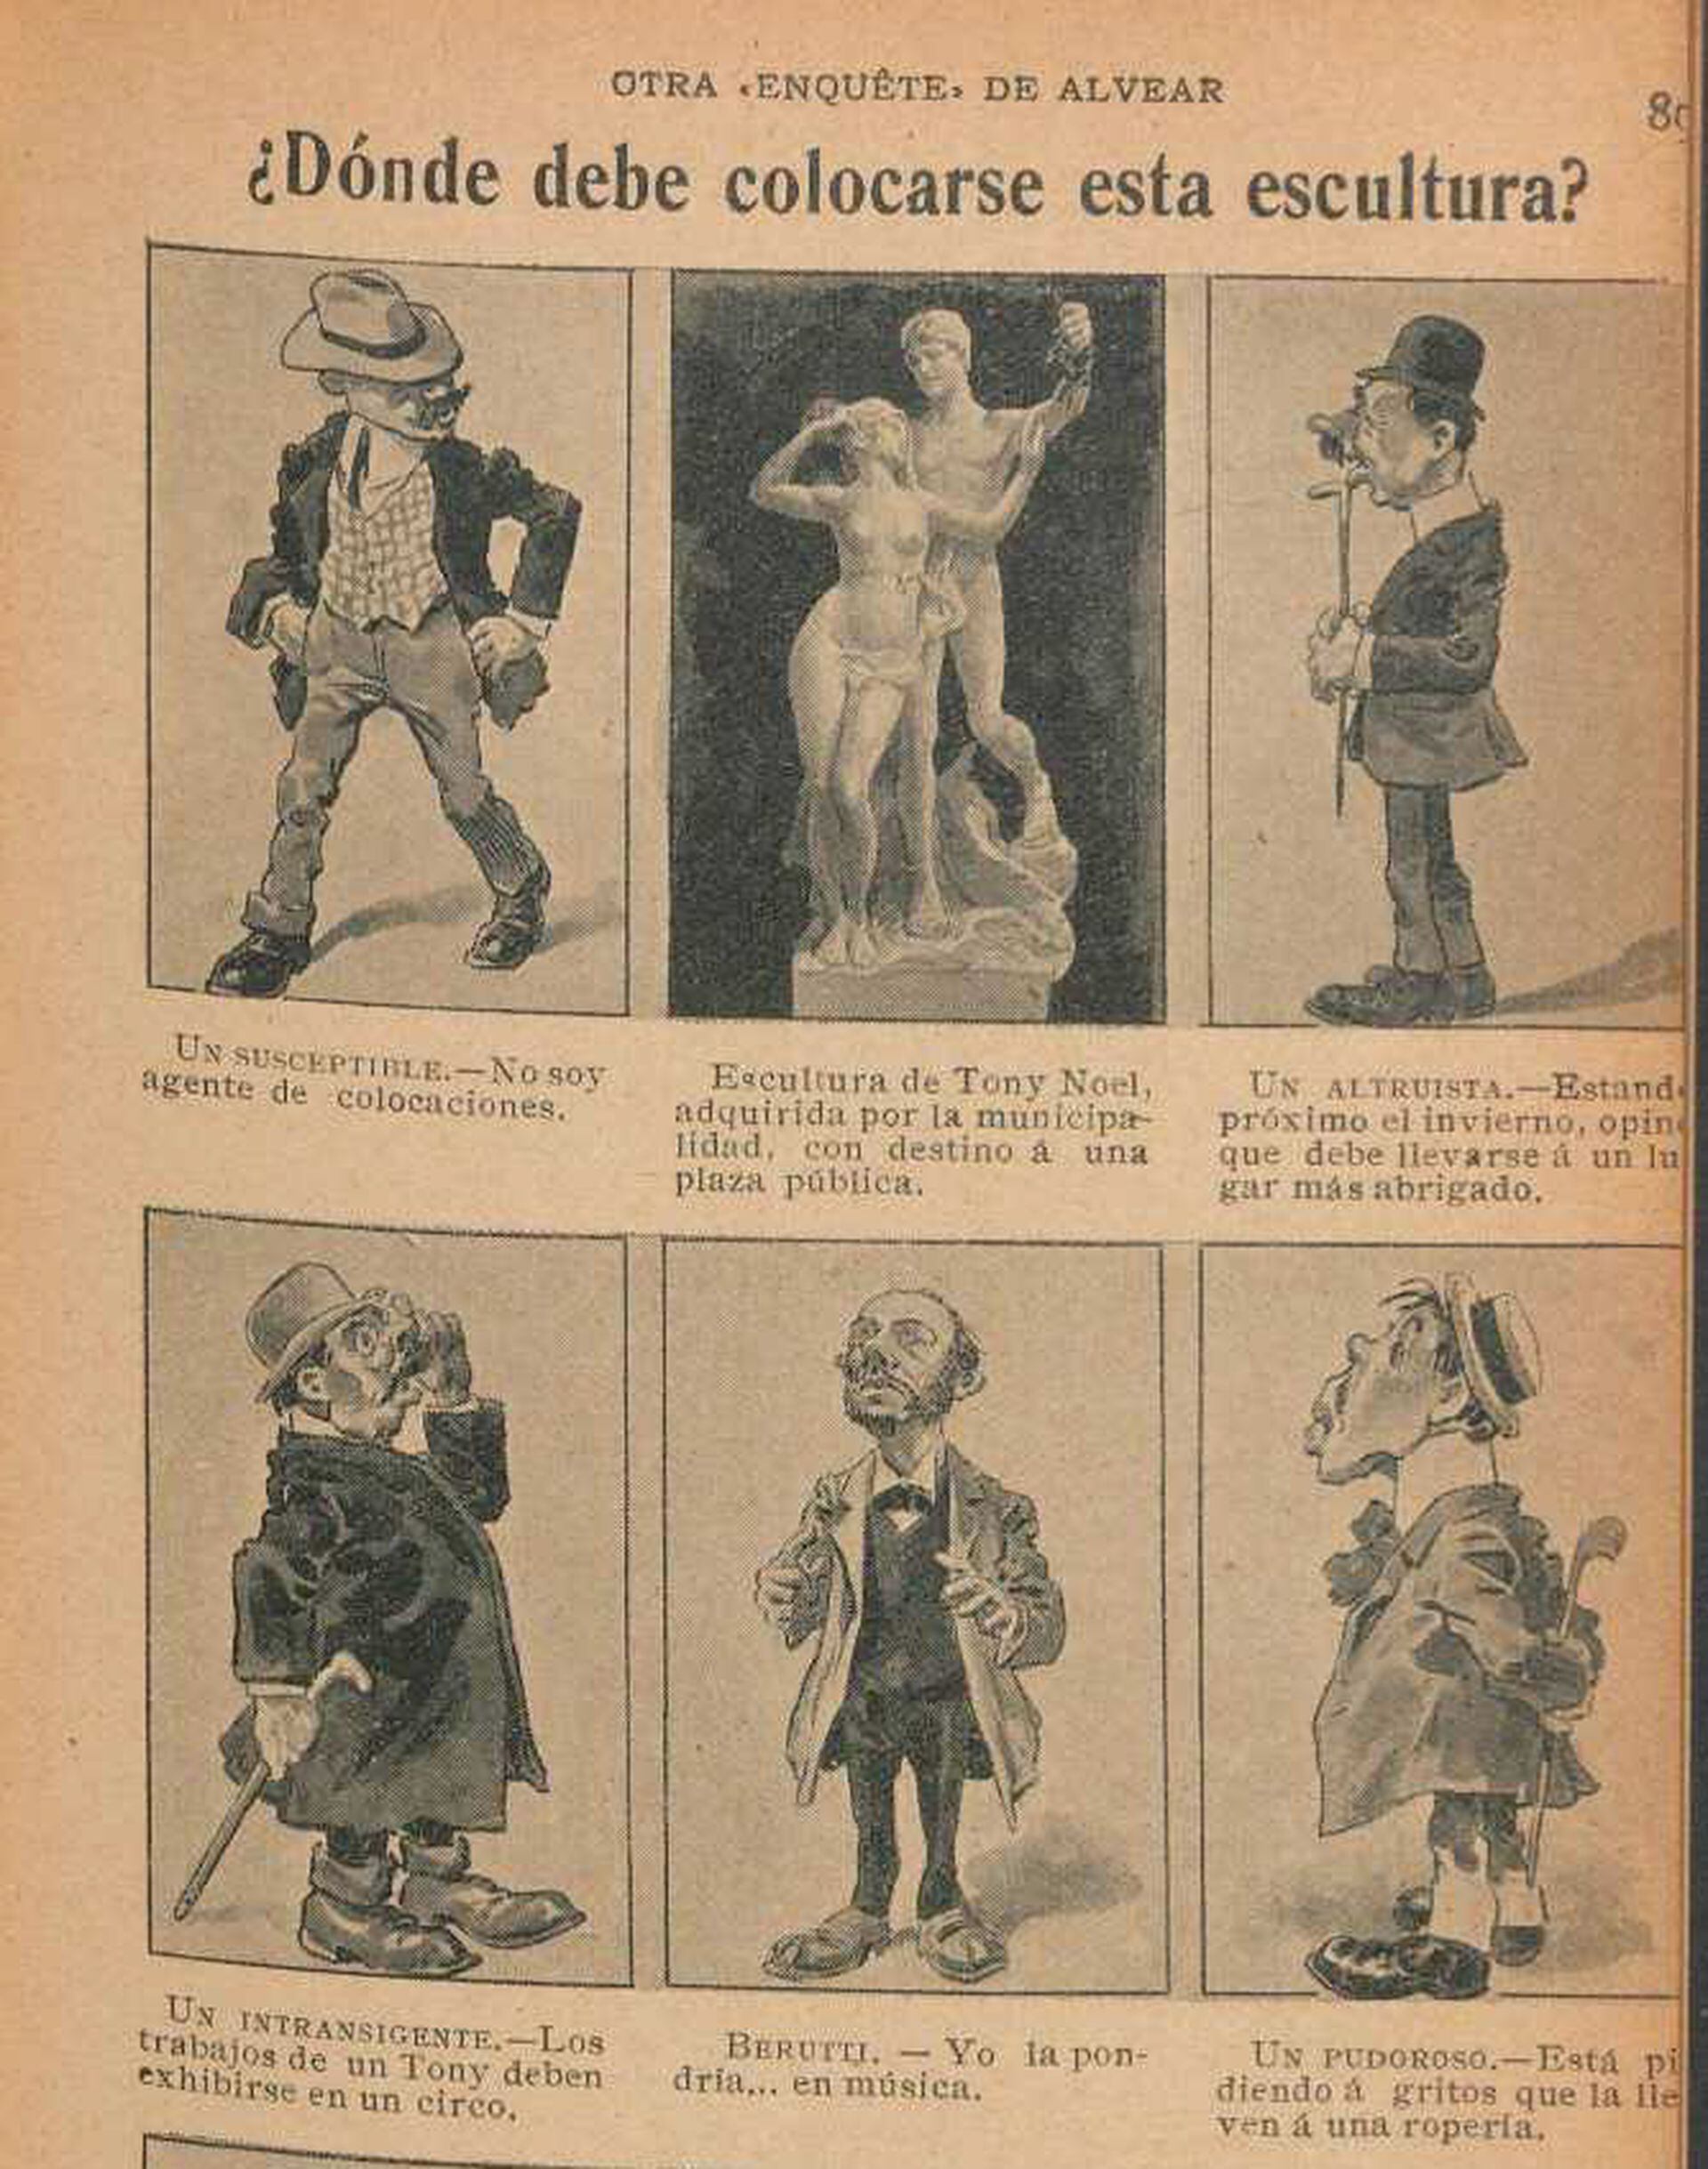 ¿Dónde debe colocarse la escultura de Tony Noel? Comic publicado en la revista PBT en 1907.